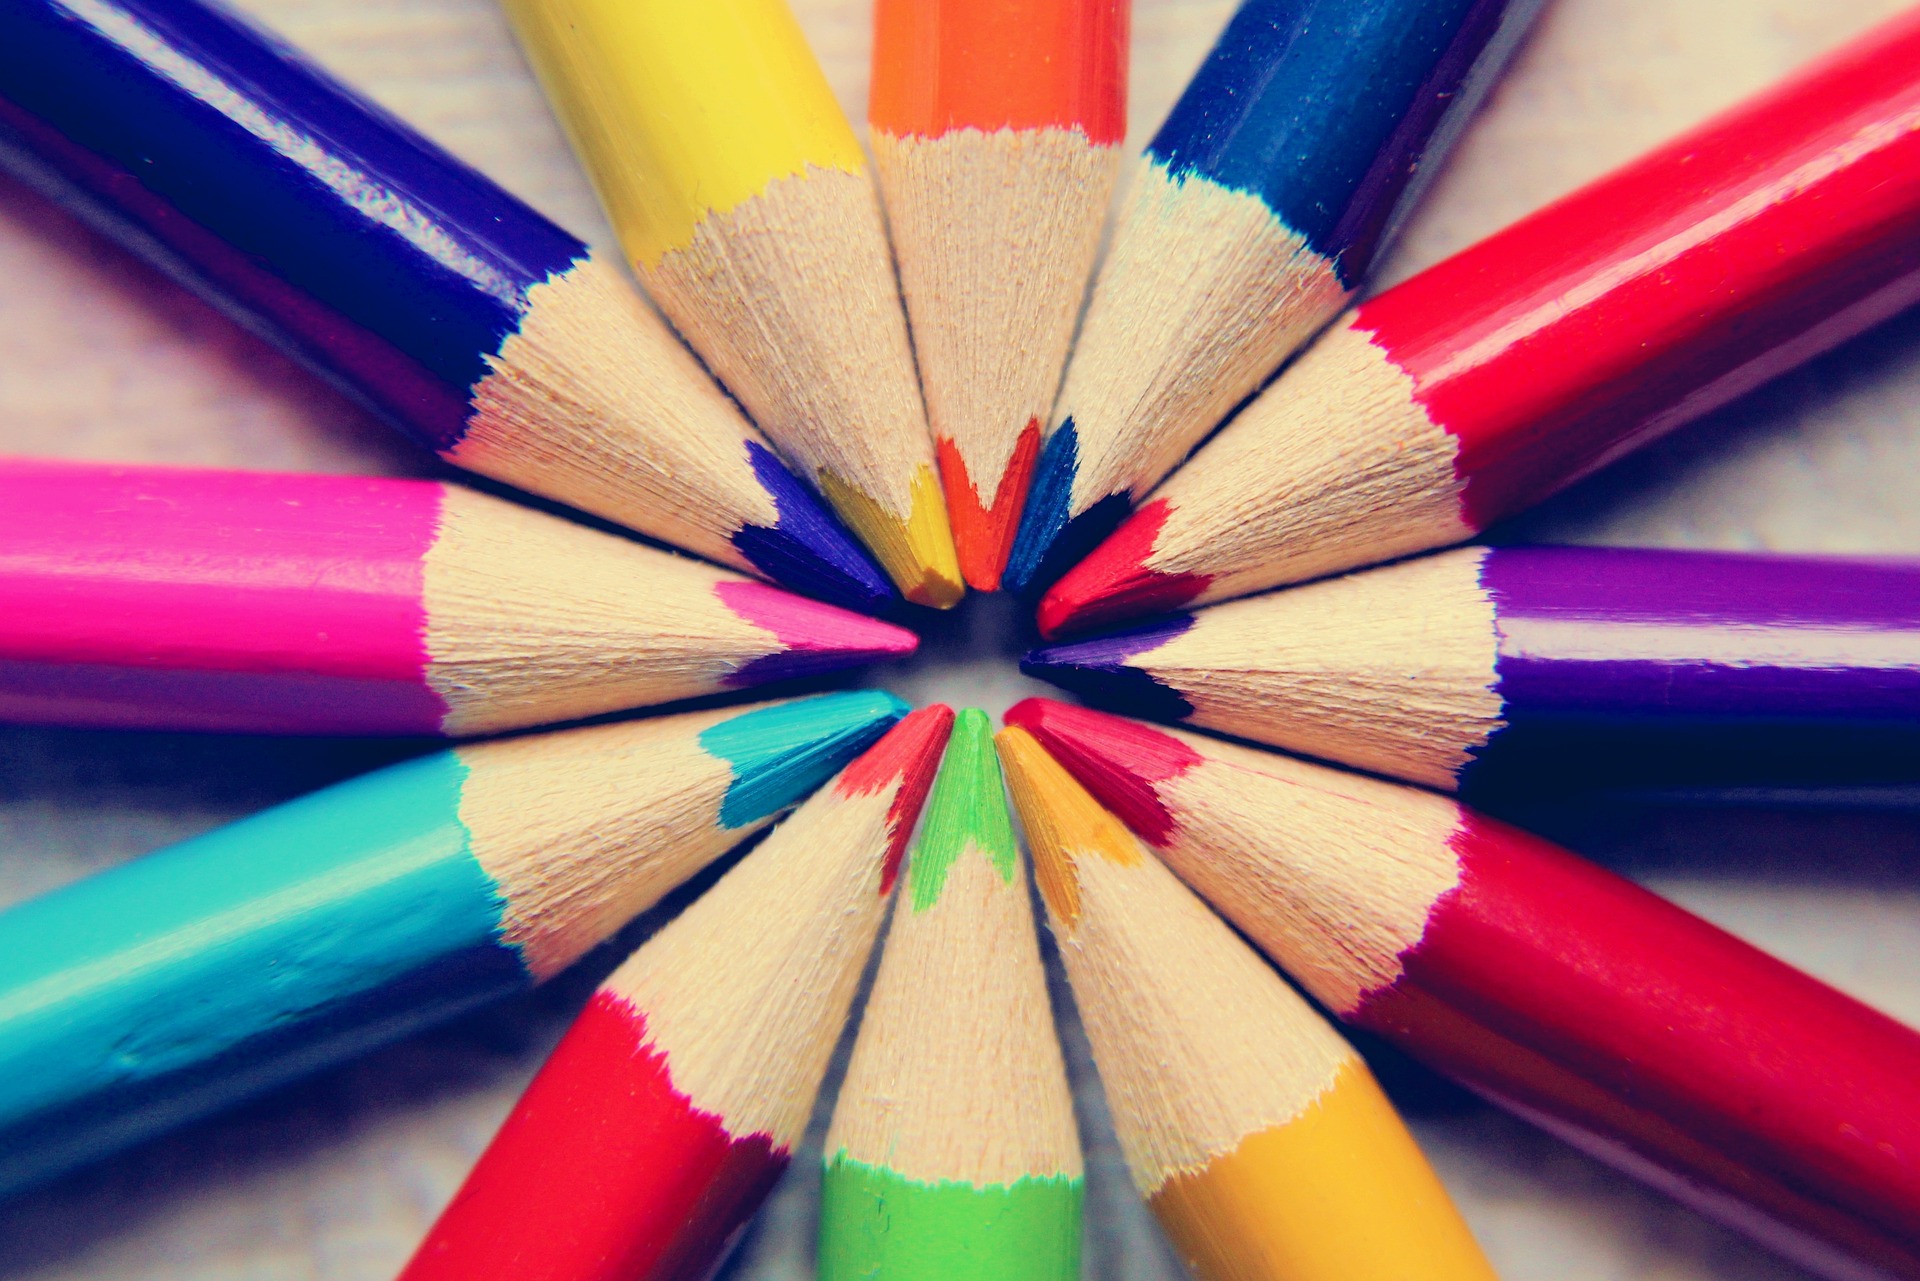 colored-pencils-g8d0a905c4_1920.jpg